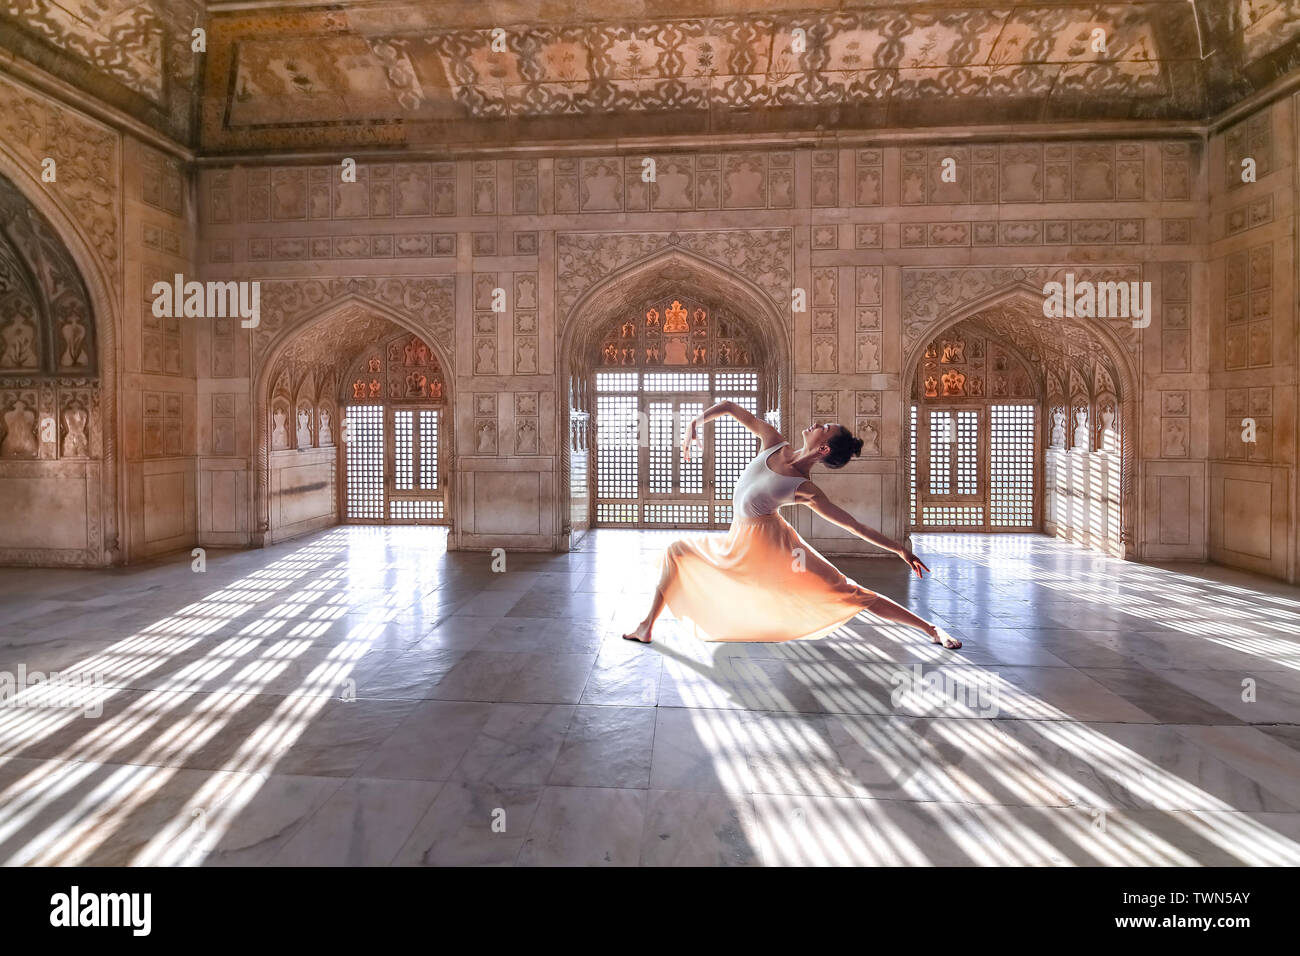 Turista femminile si presentano come un ballerino a Agra Fort royal palace con intricati in marmo bianco parete art. Agra Fort è un sito Patrimonio Mondiale dell'UNESCO. Foto Stock